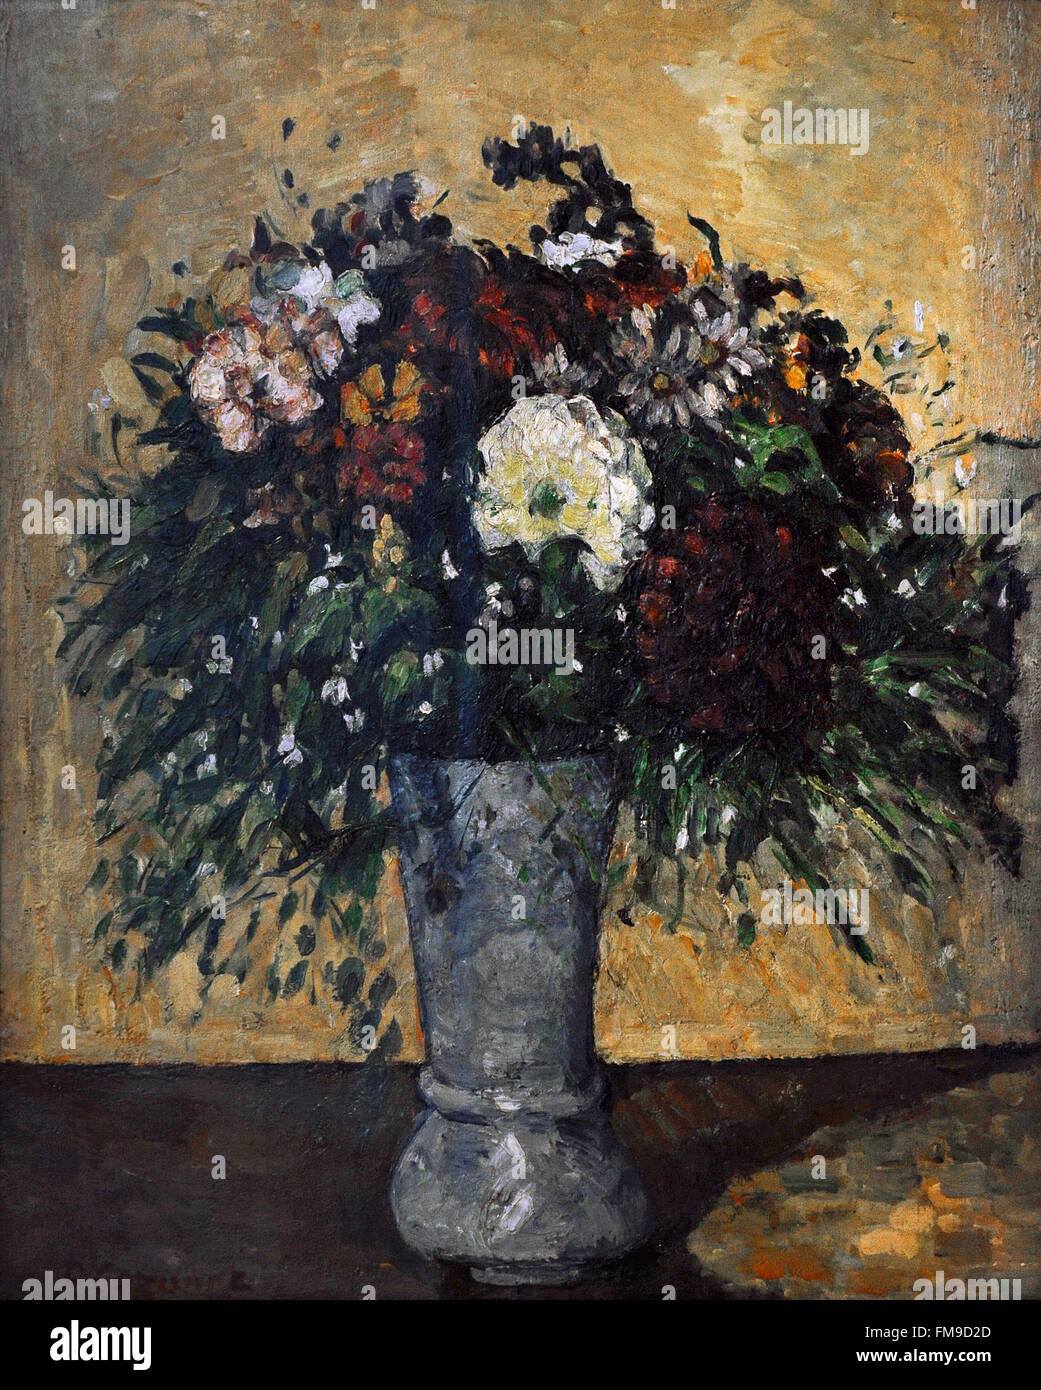 Paul Cézanne (1839-1906). Französischer Maler. Blumenstrauß in einer Vase, ca. 1877. Öl auf Leinwand. Die Eremitage. Sankt Petersburg. Russland. Stockfoto